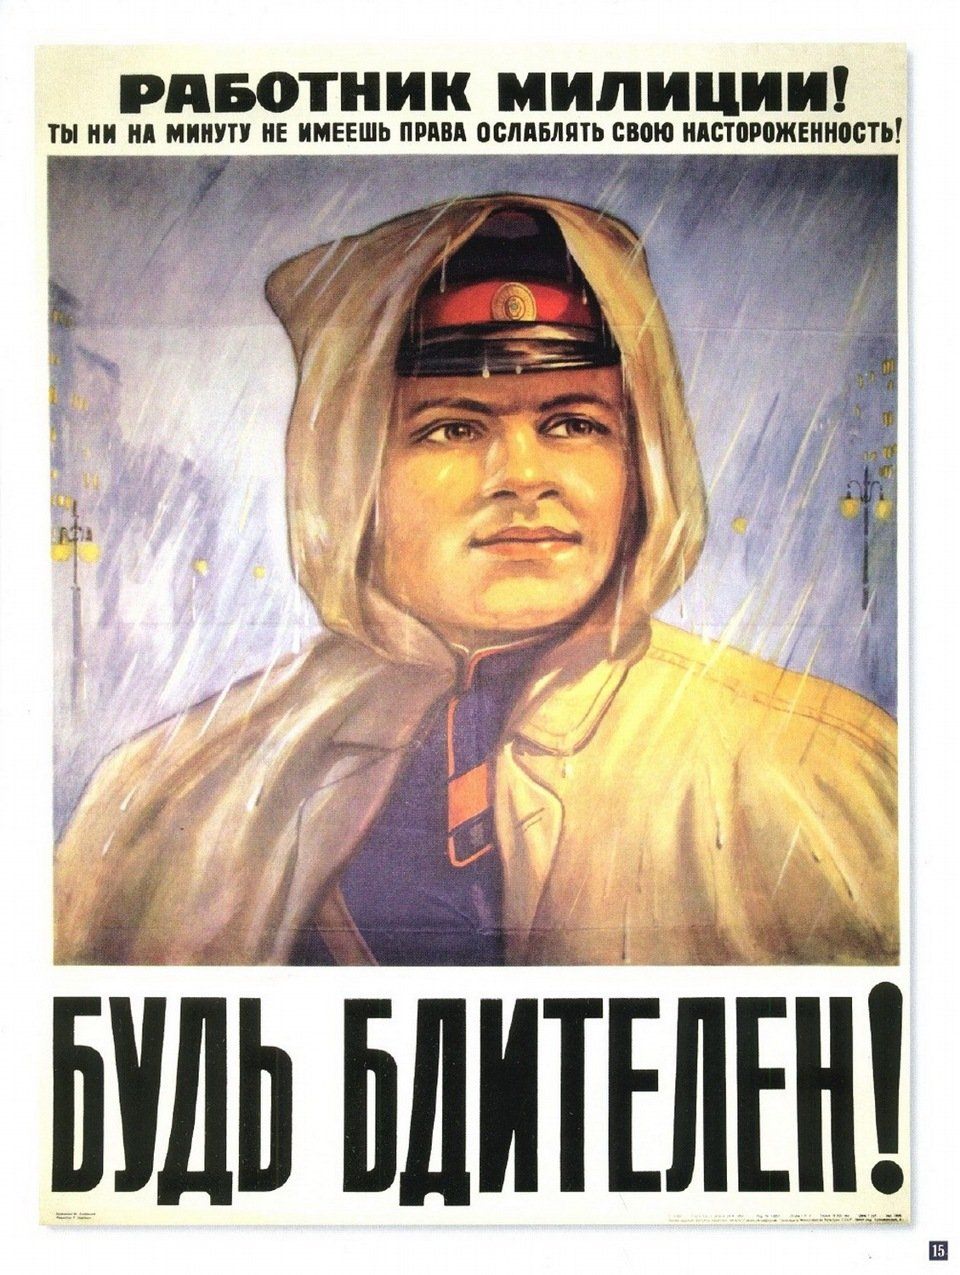 Советская агитация. Агитационные плакаты. Советские плакаты. Советские агитационные планеты. Агитационные плакаты СССР.